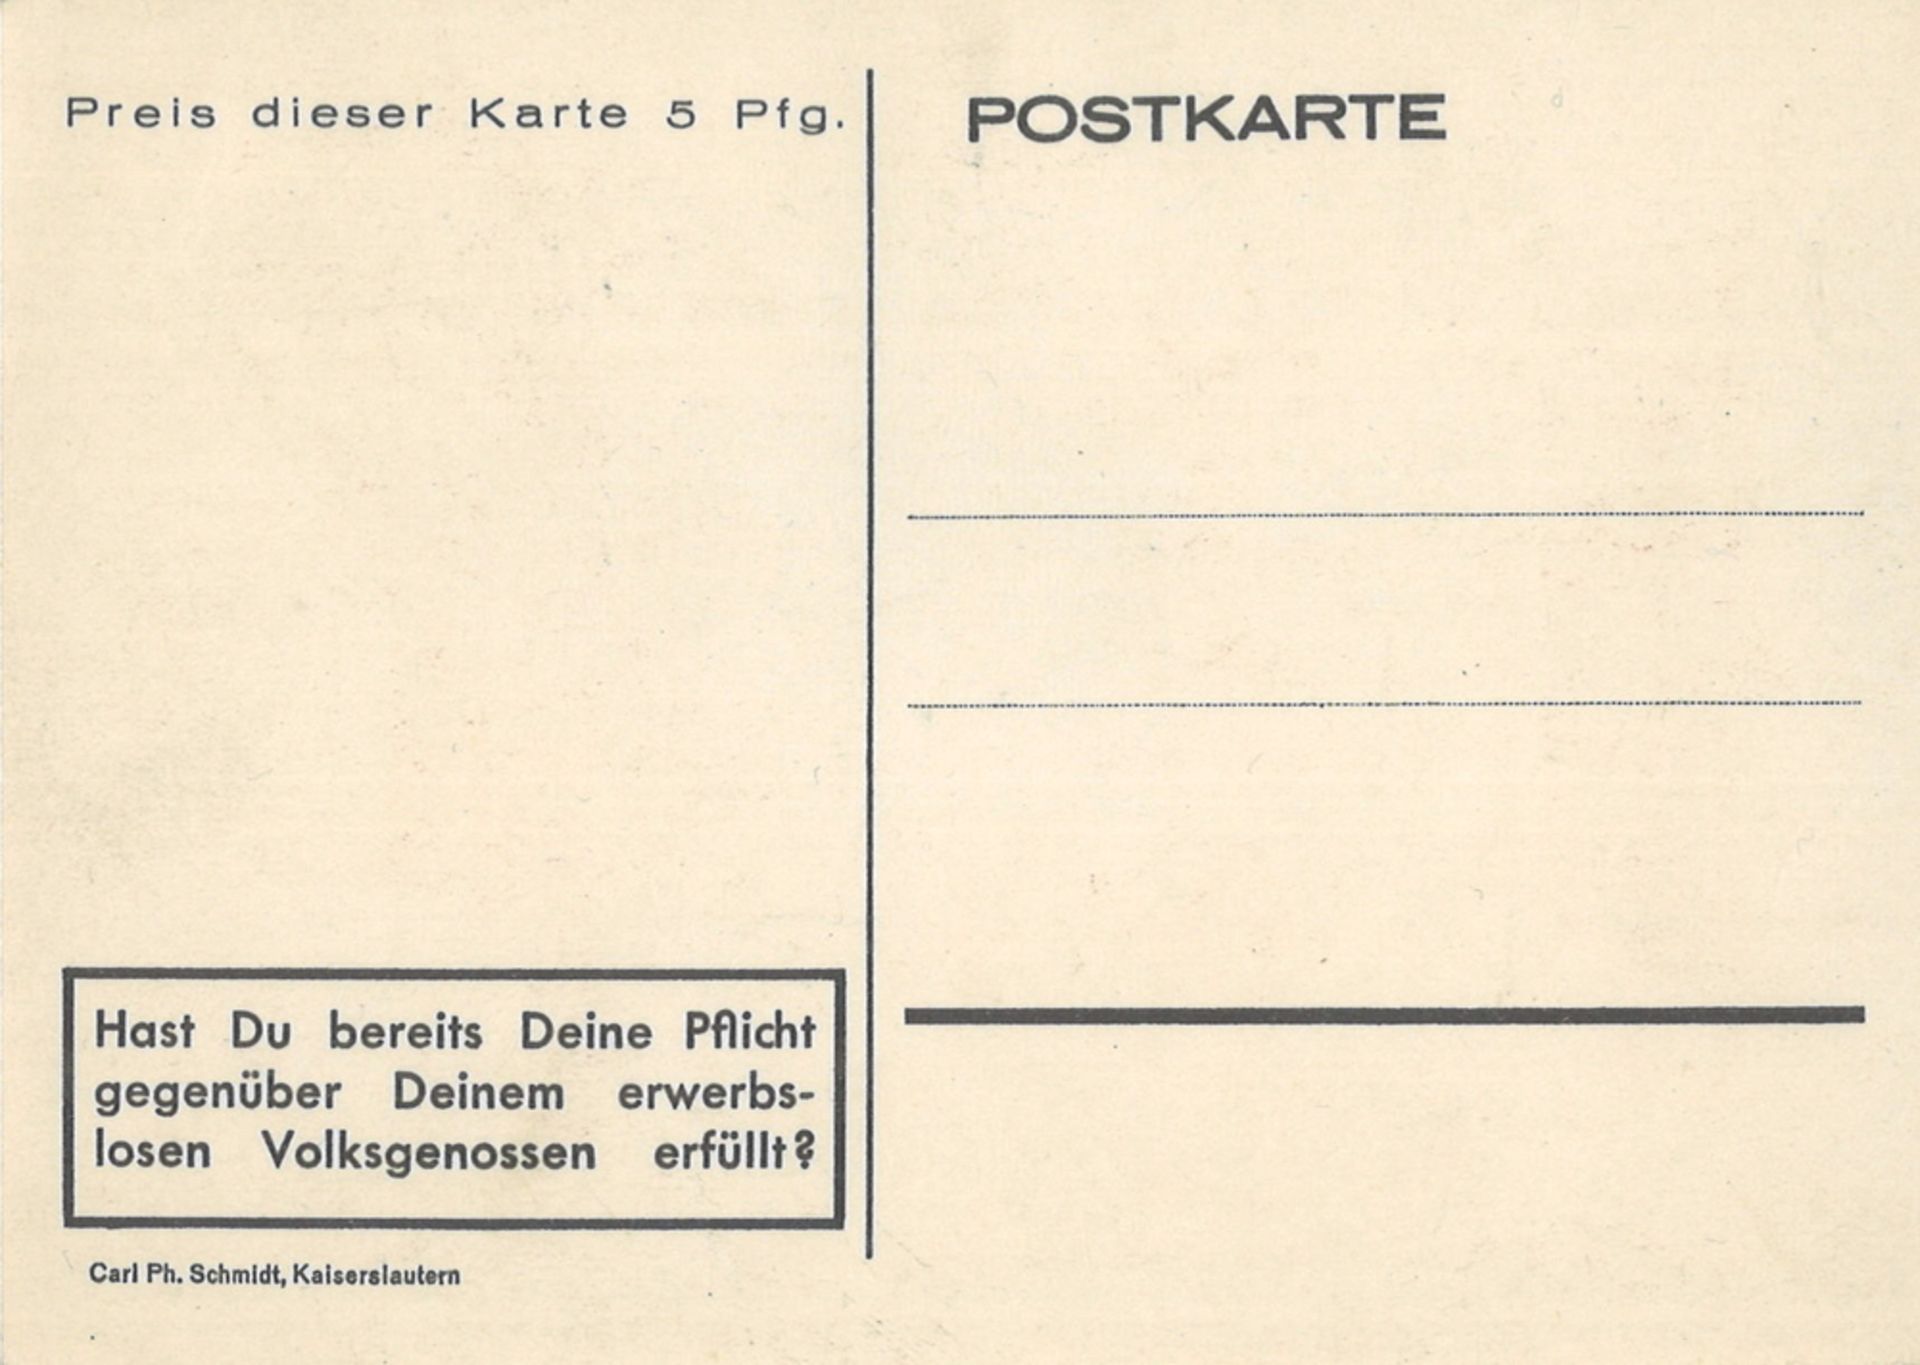 Propagandakarte "Wir gewinnen die Arbeitsschlacht" 1933/34, ungebraucht, guter Zustand. - Image 2 of 2